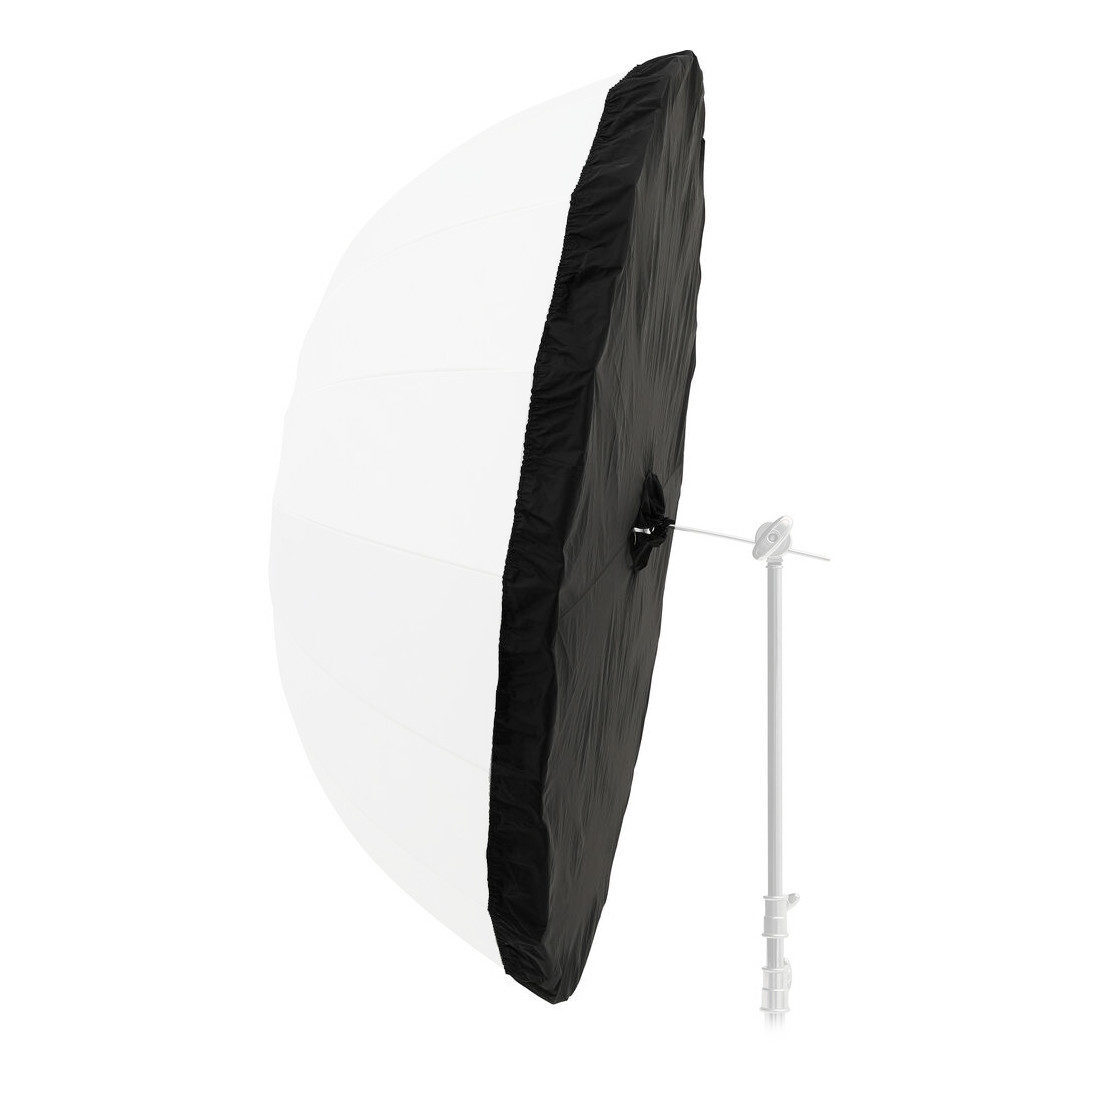 Godox 165cm Black and Silver Diffuser for Parabolic Umbrella